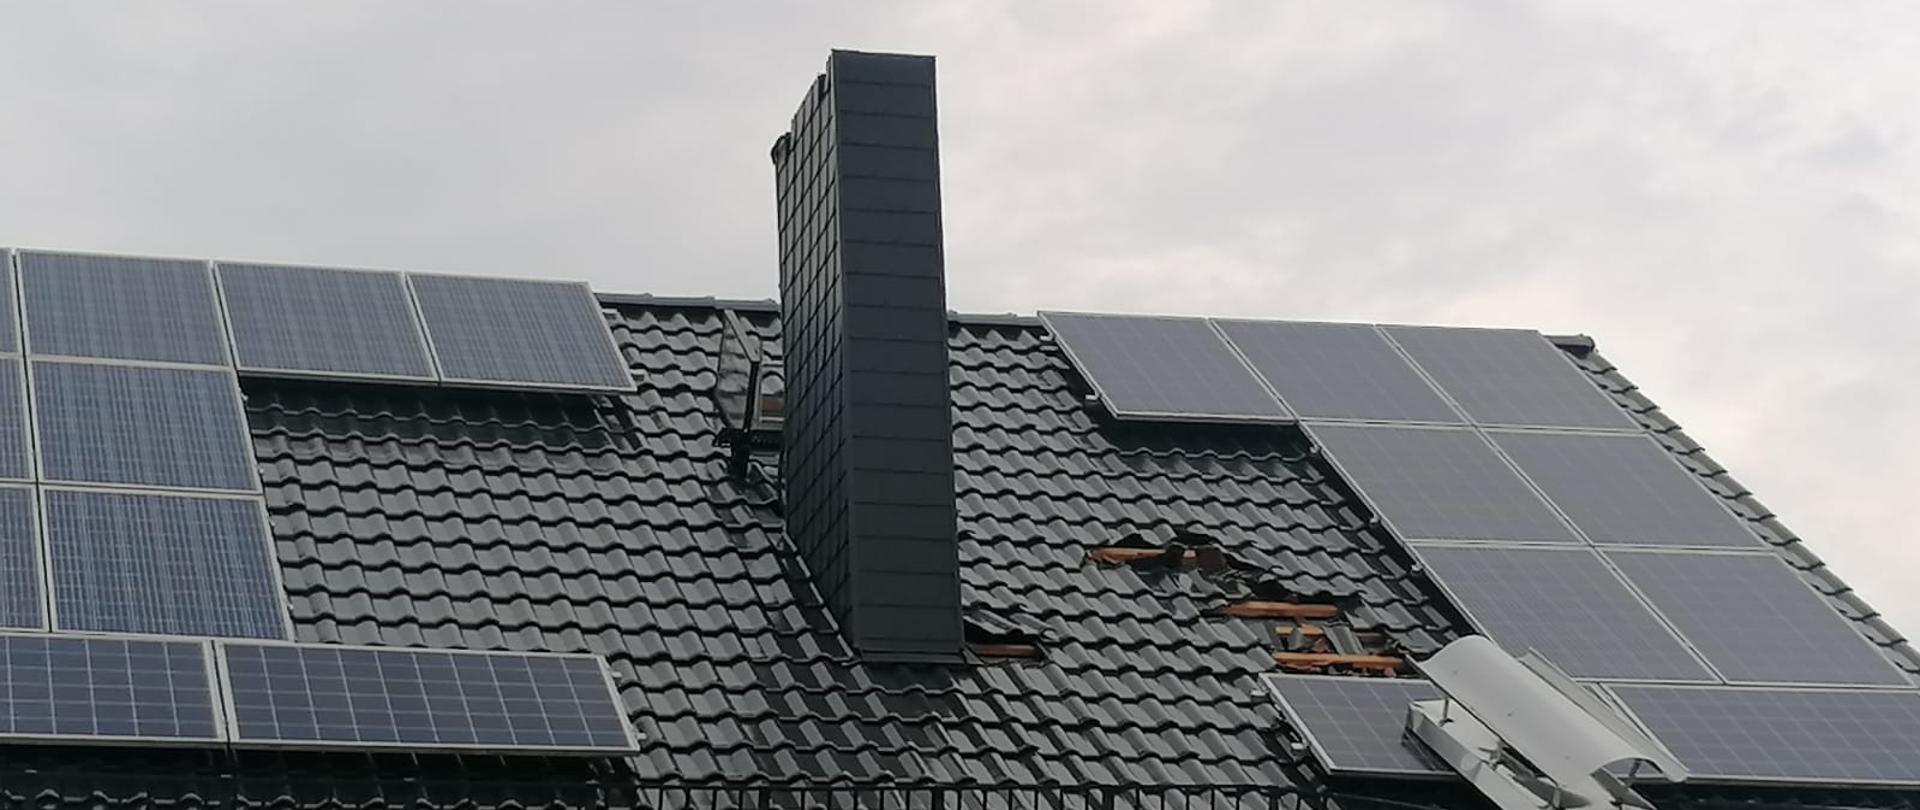 Zrzucone dachówki oraz część komina na budynku mieszkalnym w gminie Strzeleczki w powiecie krapkowickim.
Na dachu panele fotowoltaiczne. Dachówki ceramiczne koloru grafitowego.